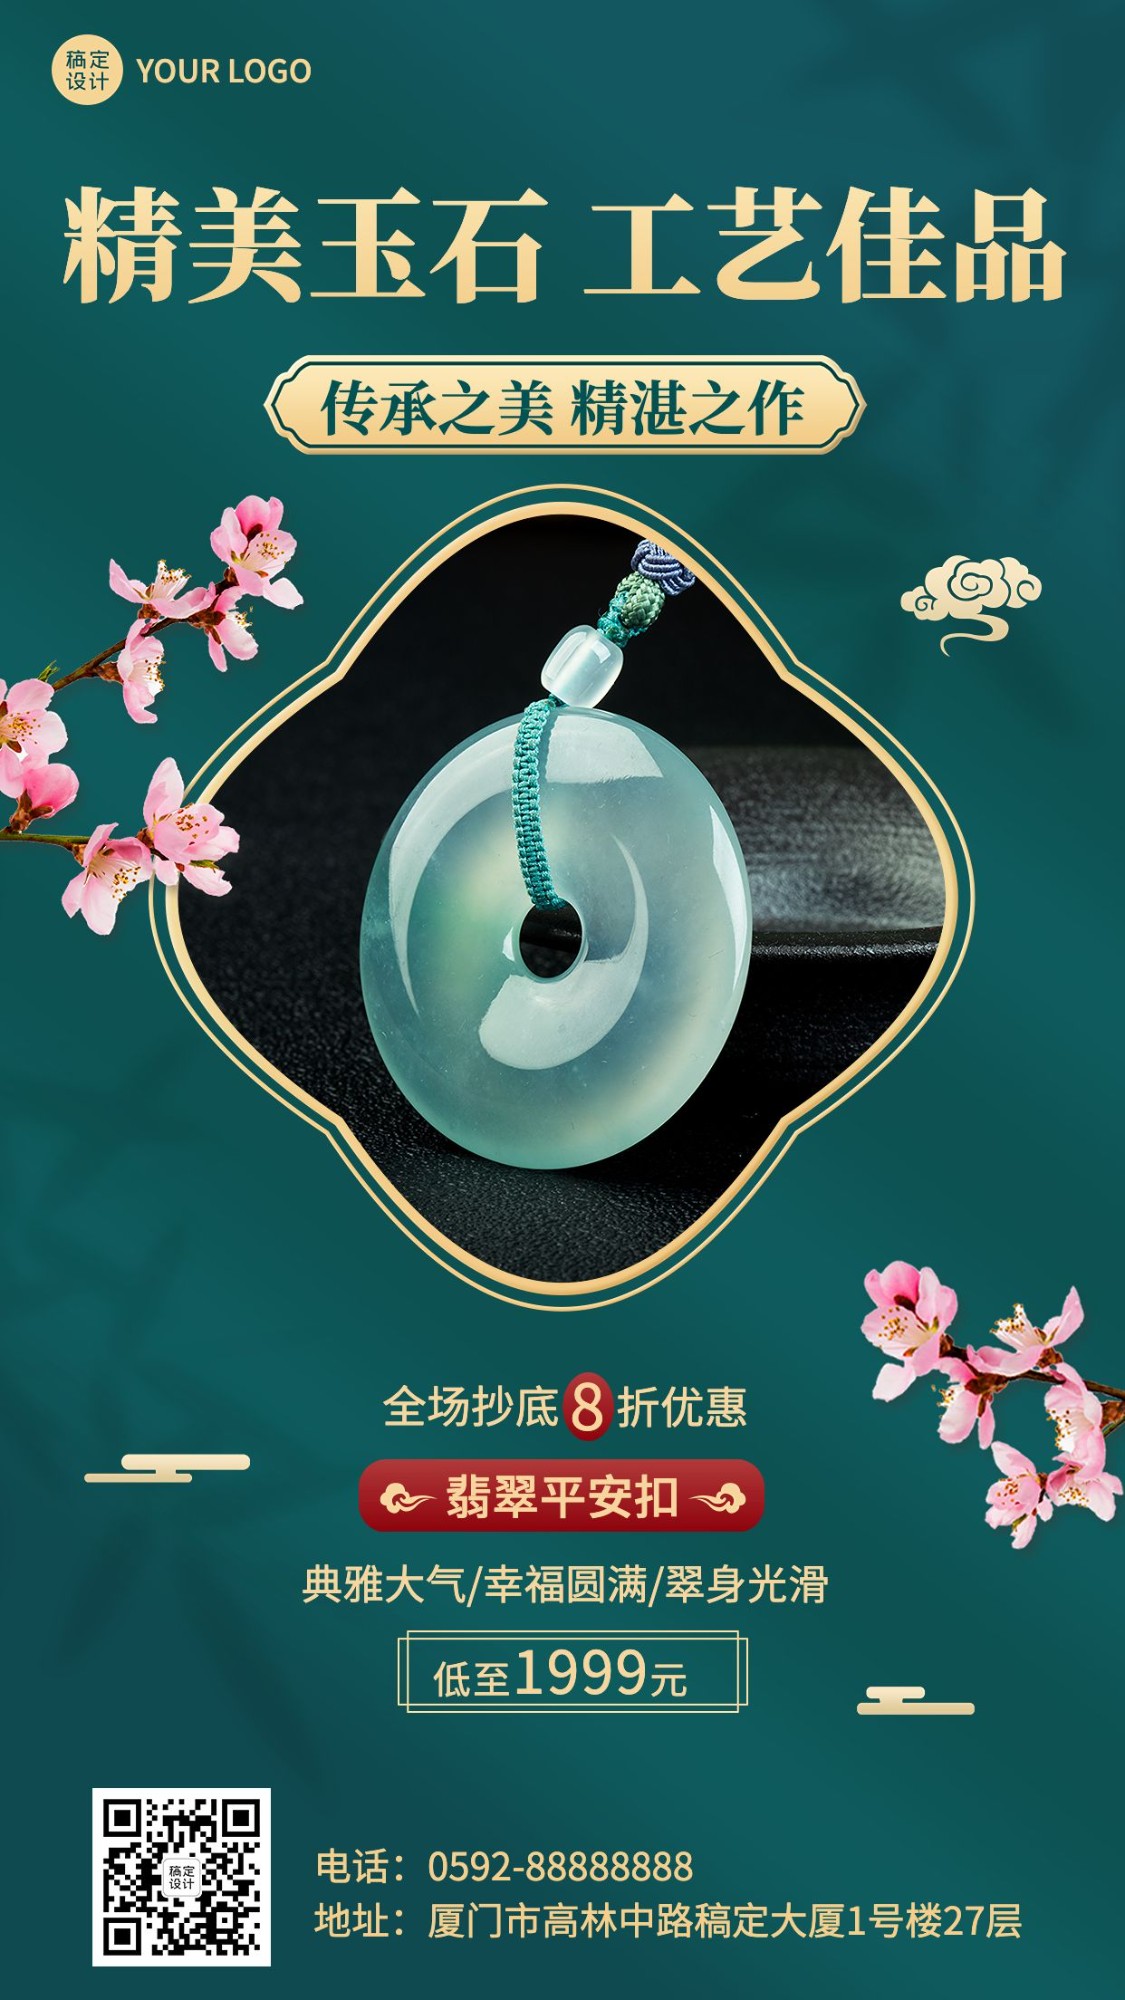 微商珠宝首饰和田玉产品营销展示中国风手机海报预览效果